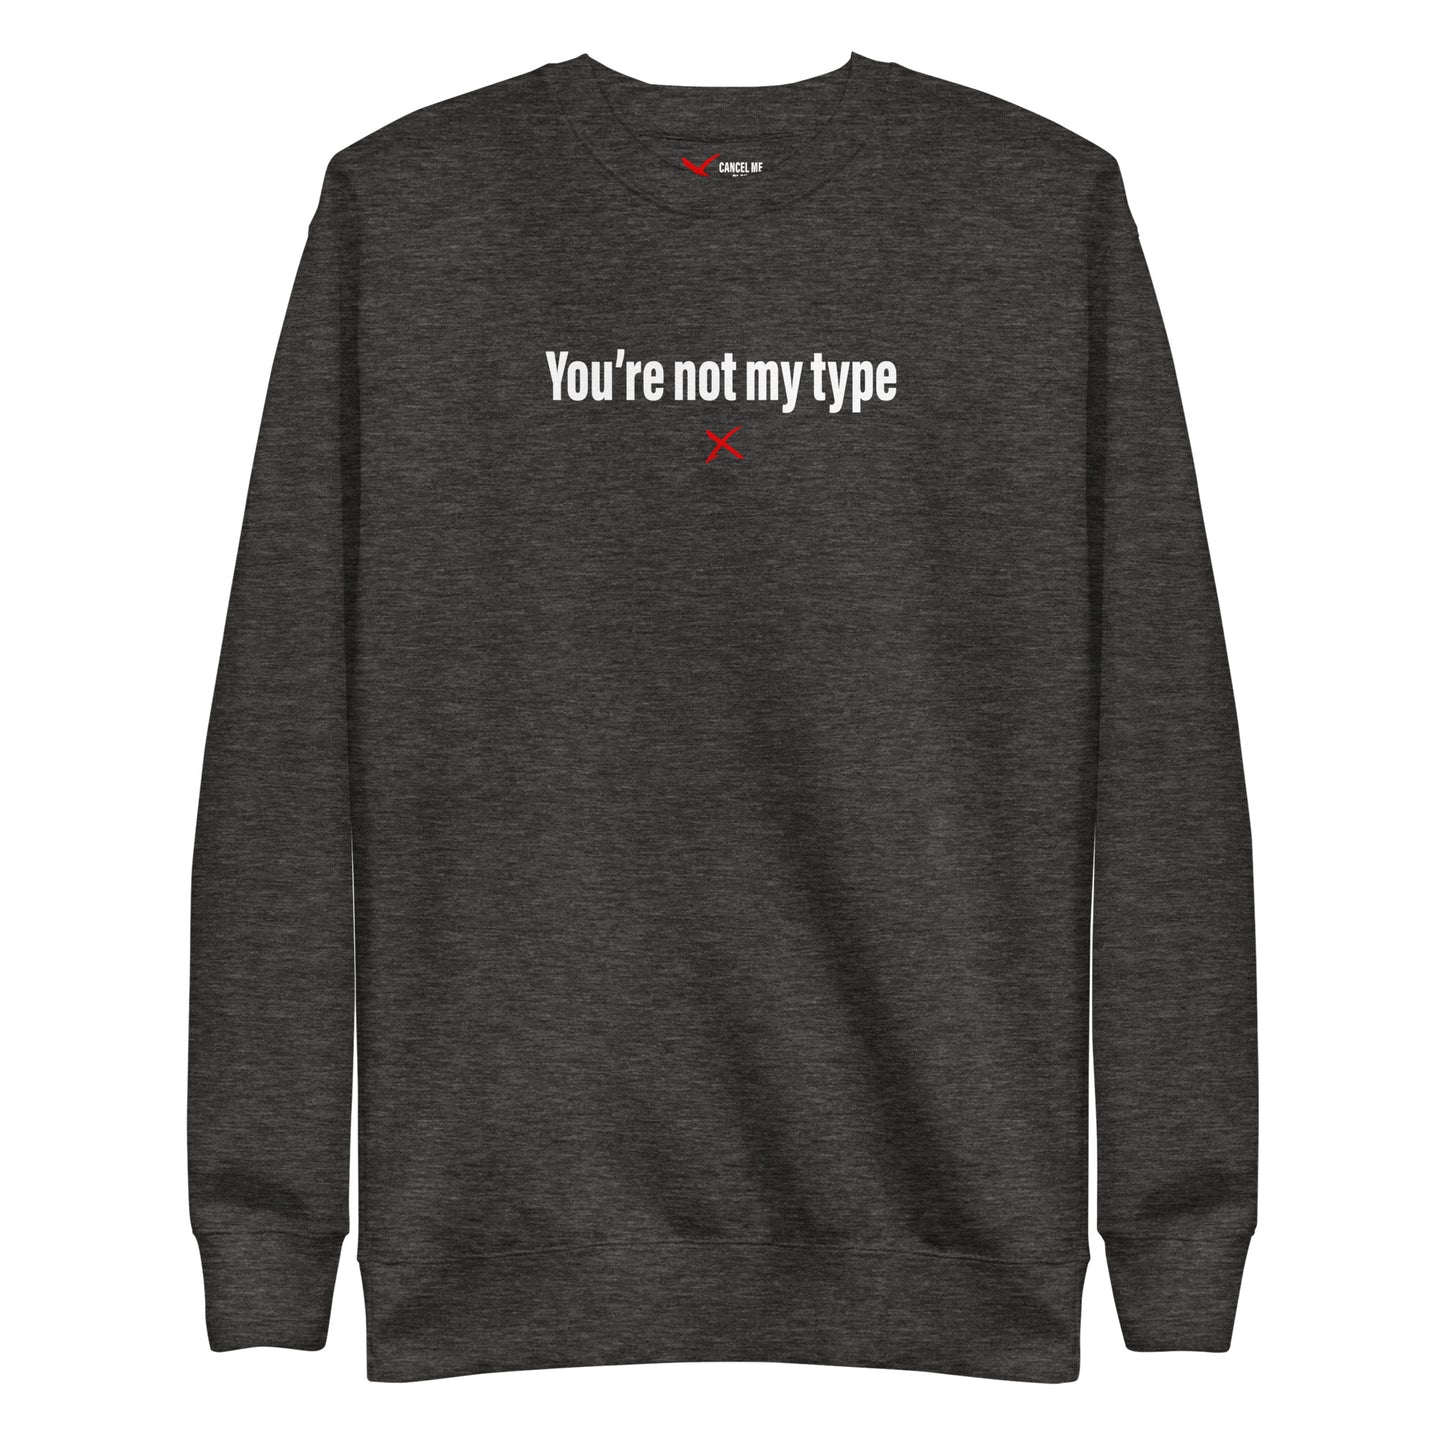 You're not my type - Sweatshirt